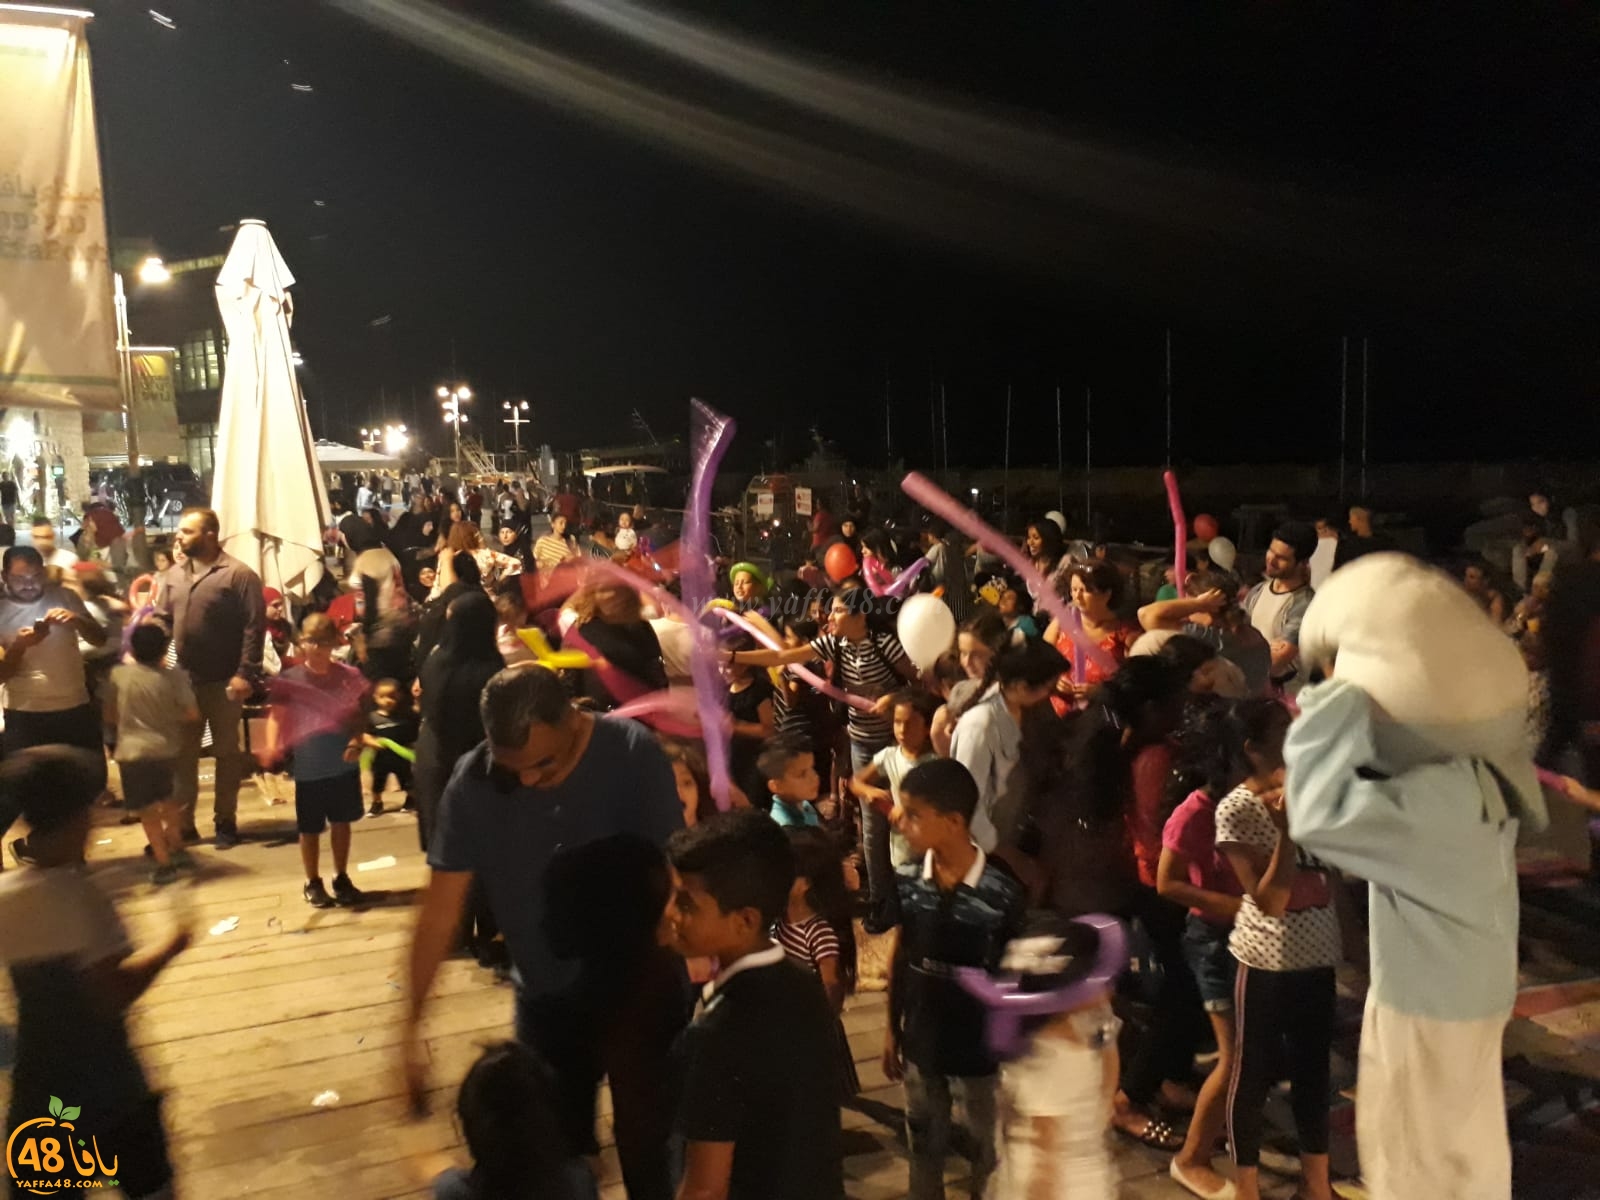   بالصور: فعاليات شيّقة للأطفال في ميناء يافا باشراف جمعة أبو طبيخ